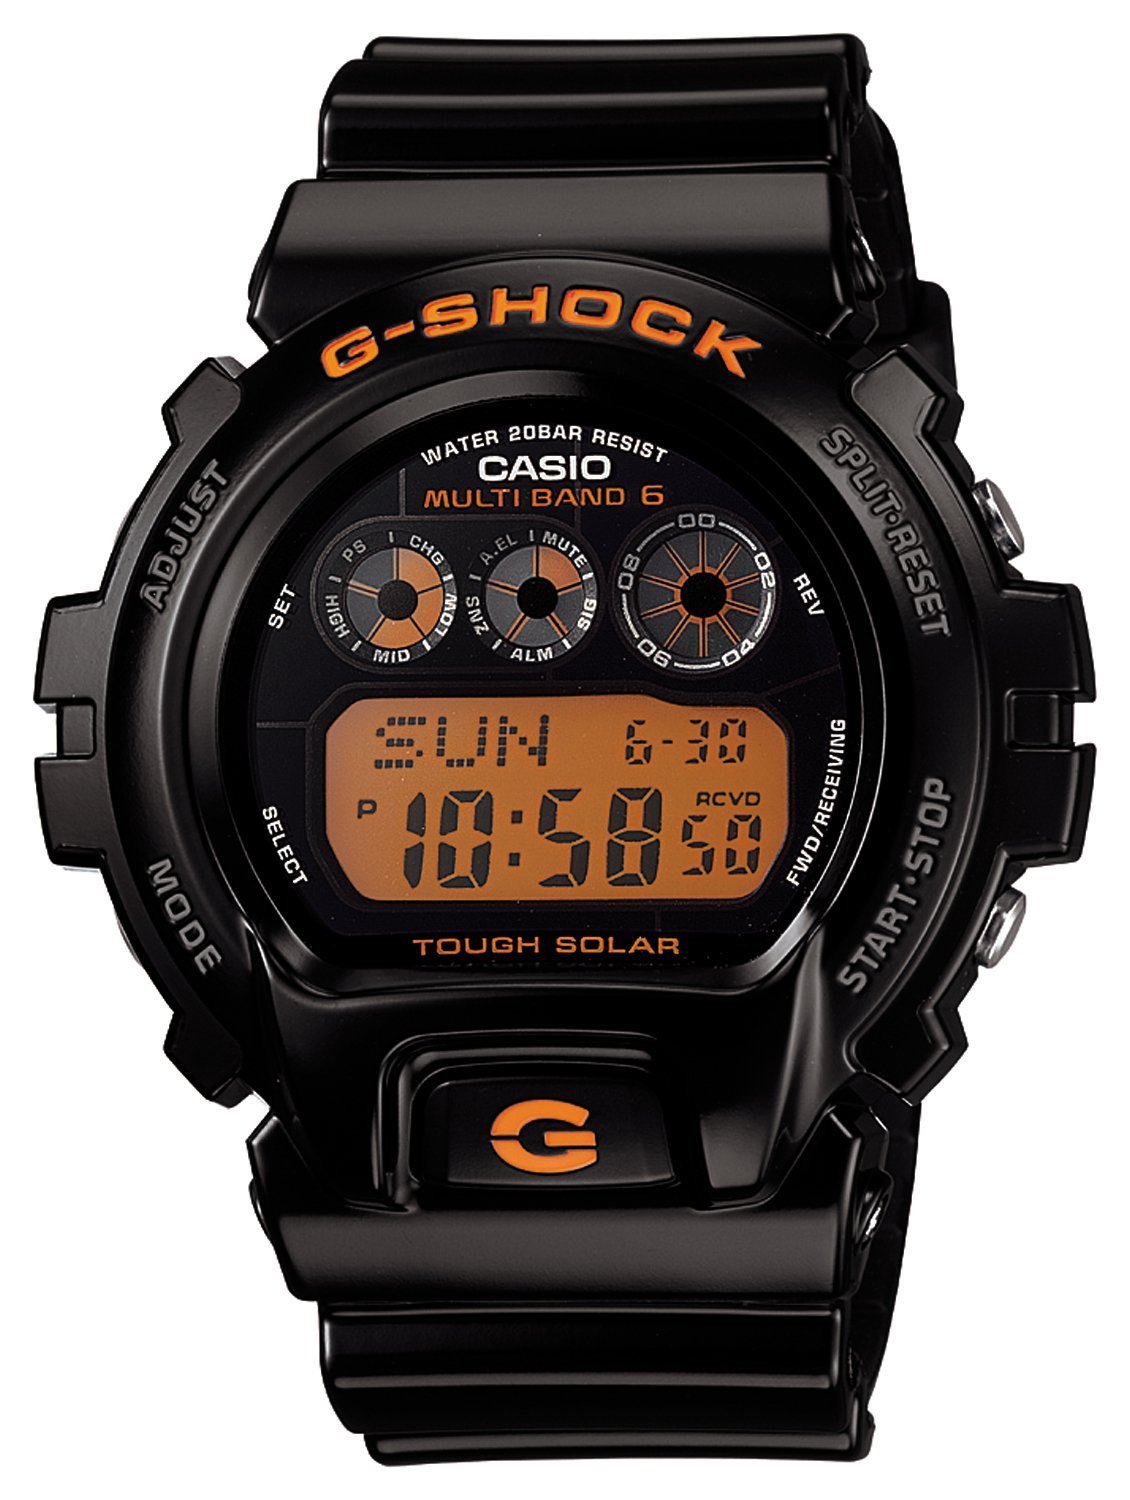 【クリックで詳細表示】カシオ[カシオ]CASIO 腕時計 G-SHOCK ジーショック STANDARD タフソーラー 電波時計 MULTIBAND 6 GW-6900B-1JF メンズ